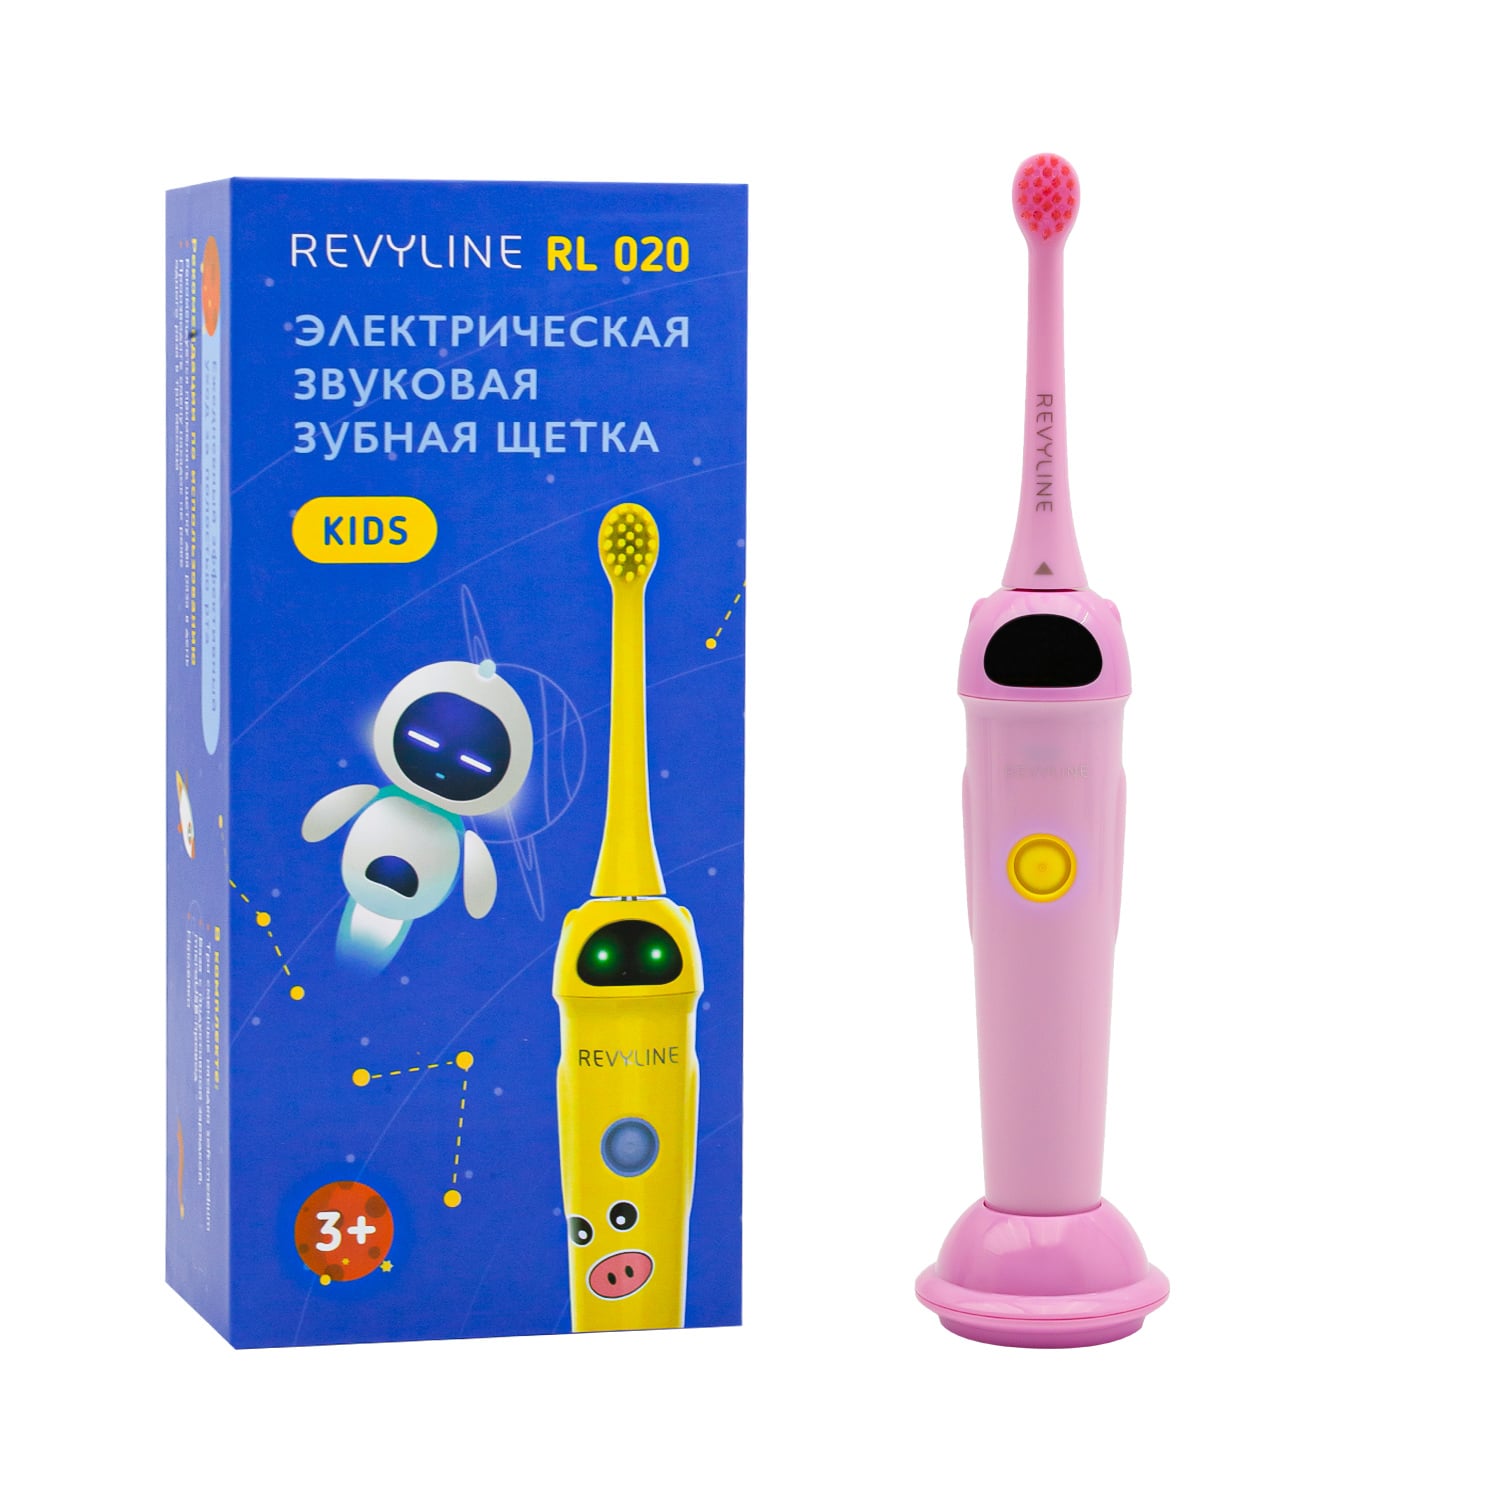 цена REVYLINE Детская электрическая звуковая зубная щетка RL 020 3+, розовая, 1 шт (REVYLINE, Электрические зубные щетки)